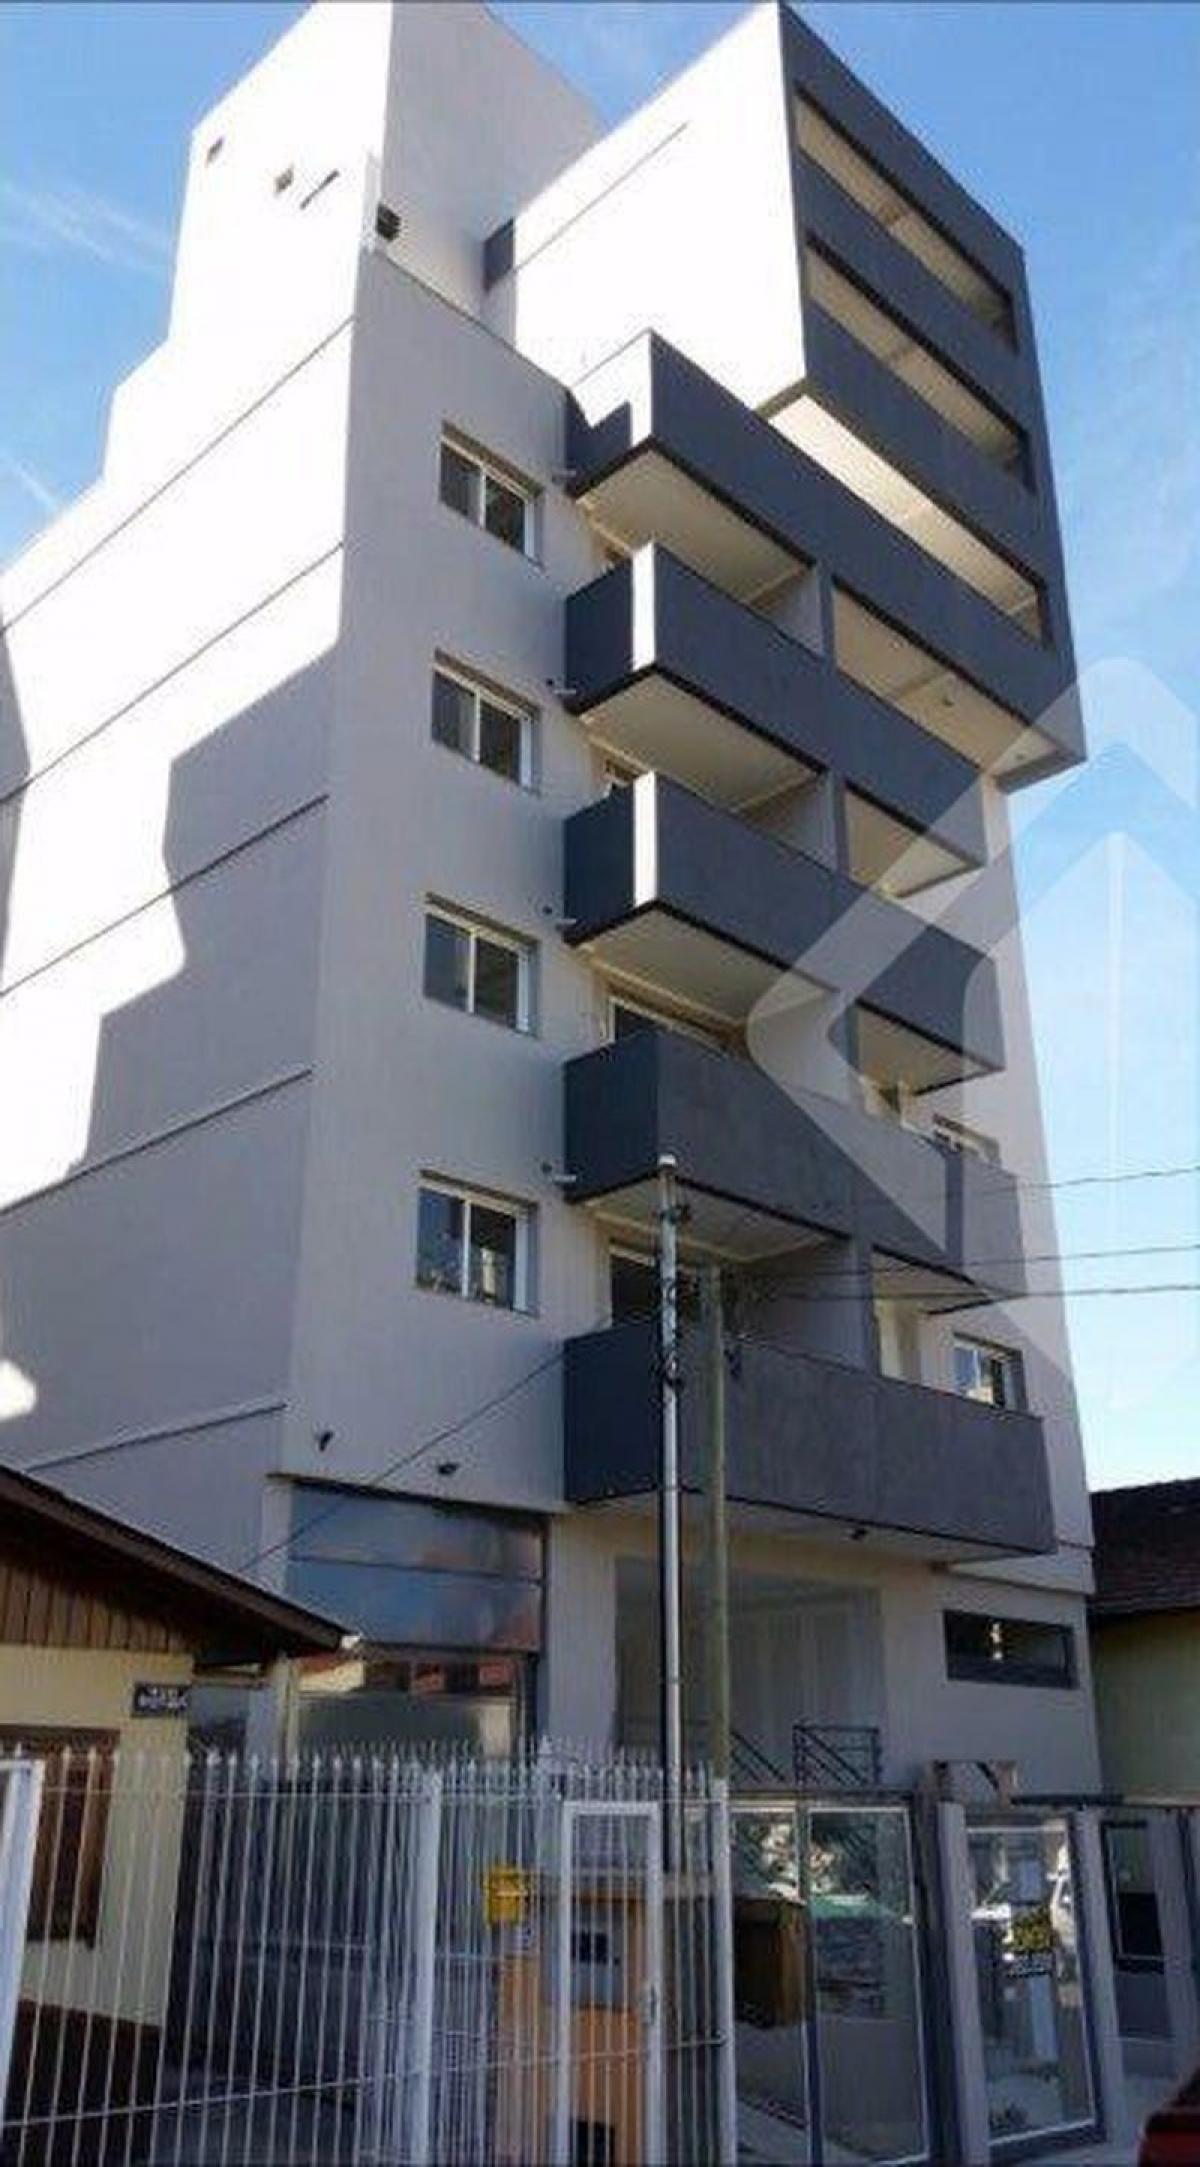 Picture of Apartment For Sale in Caxias Do Sul, Rio Grande do Sul, Brazil